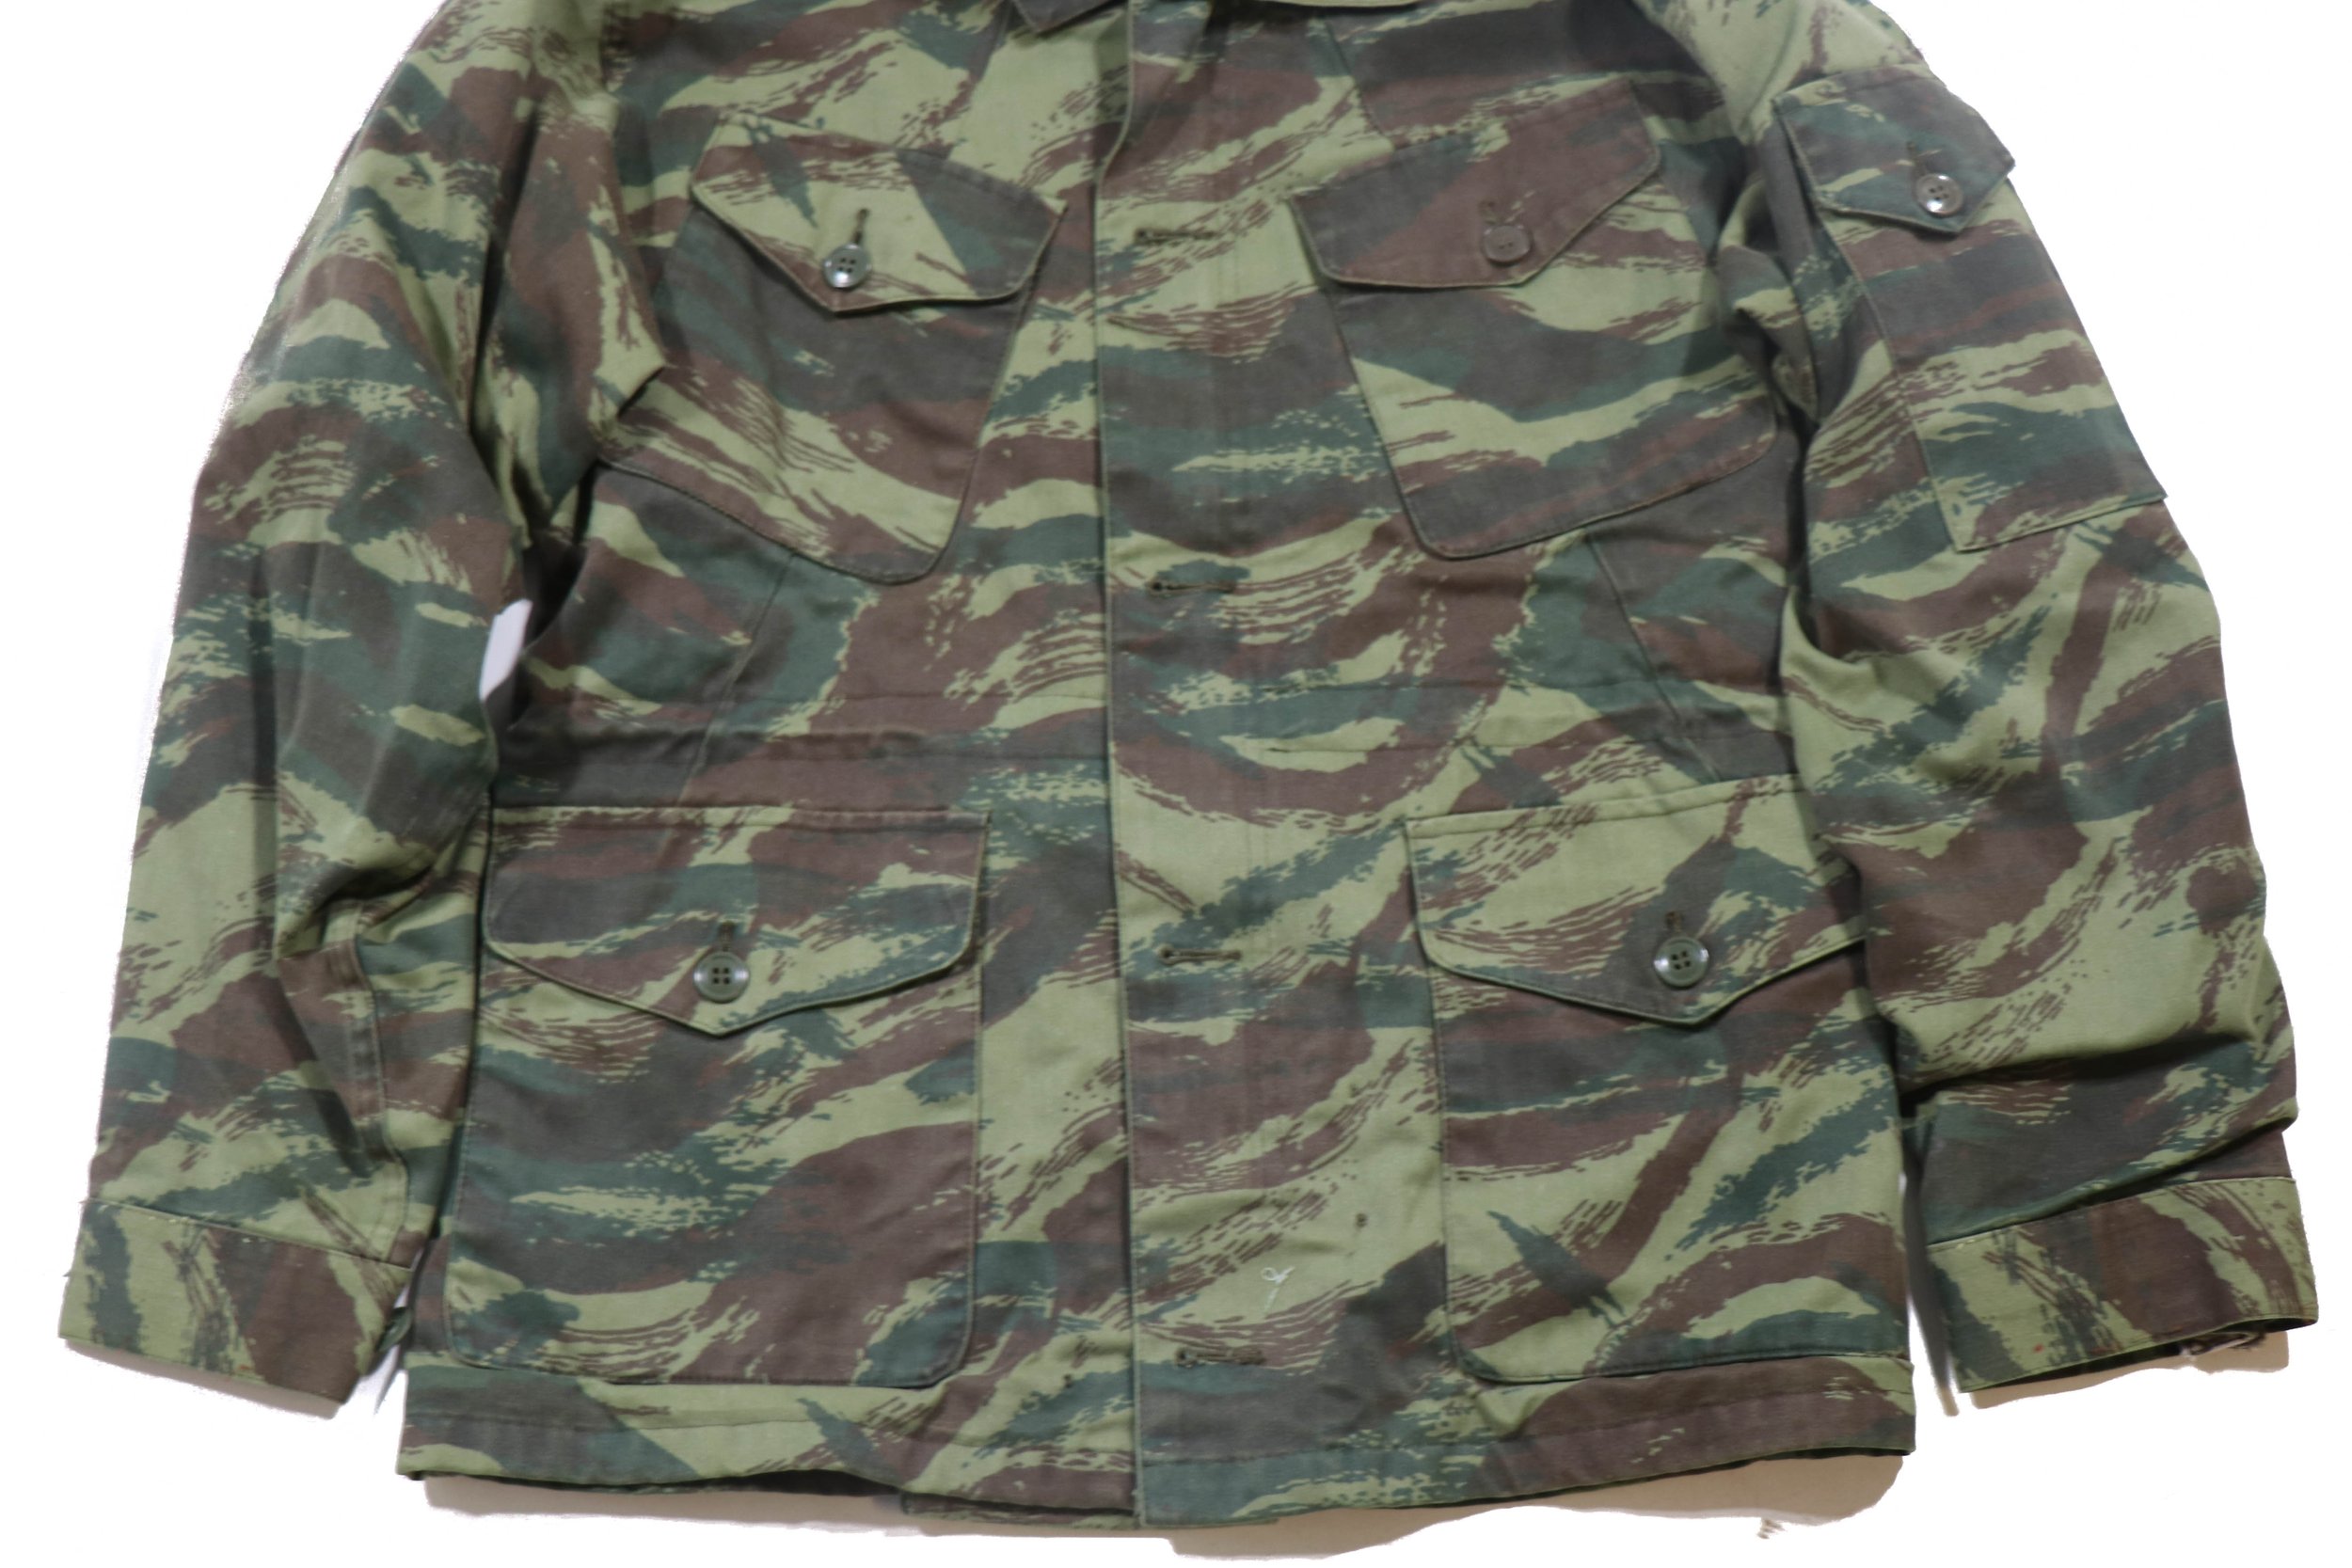 Iraqi Lizard Pattern Camouflage Uniform — Iraqi Militaria